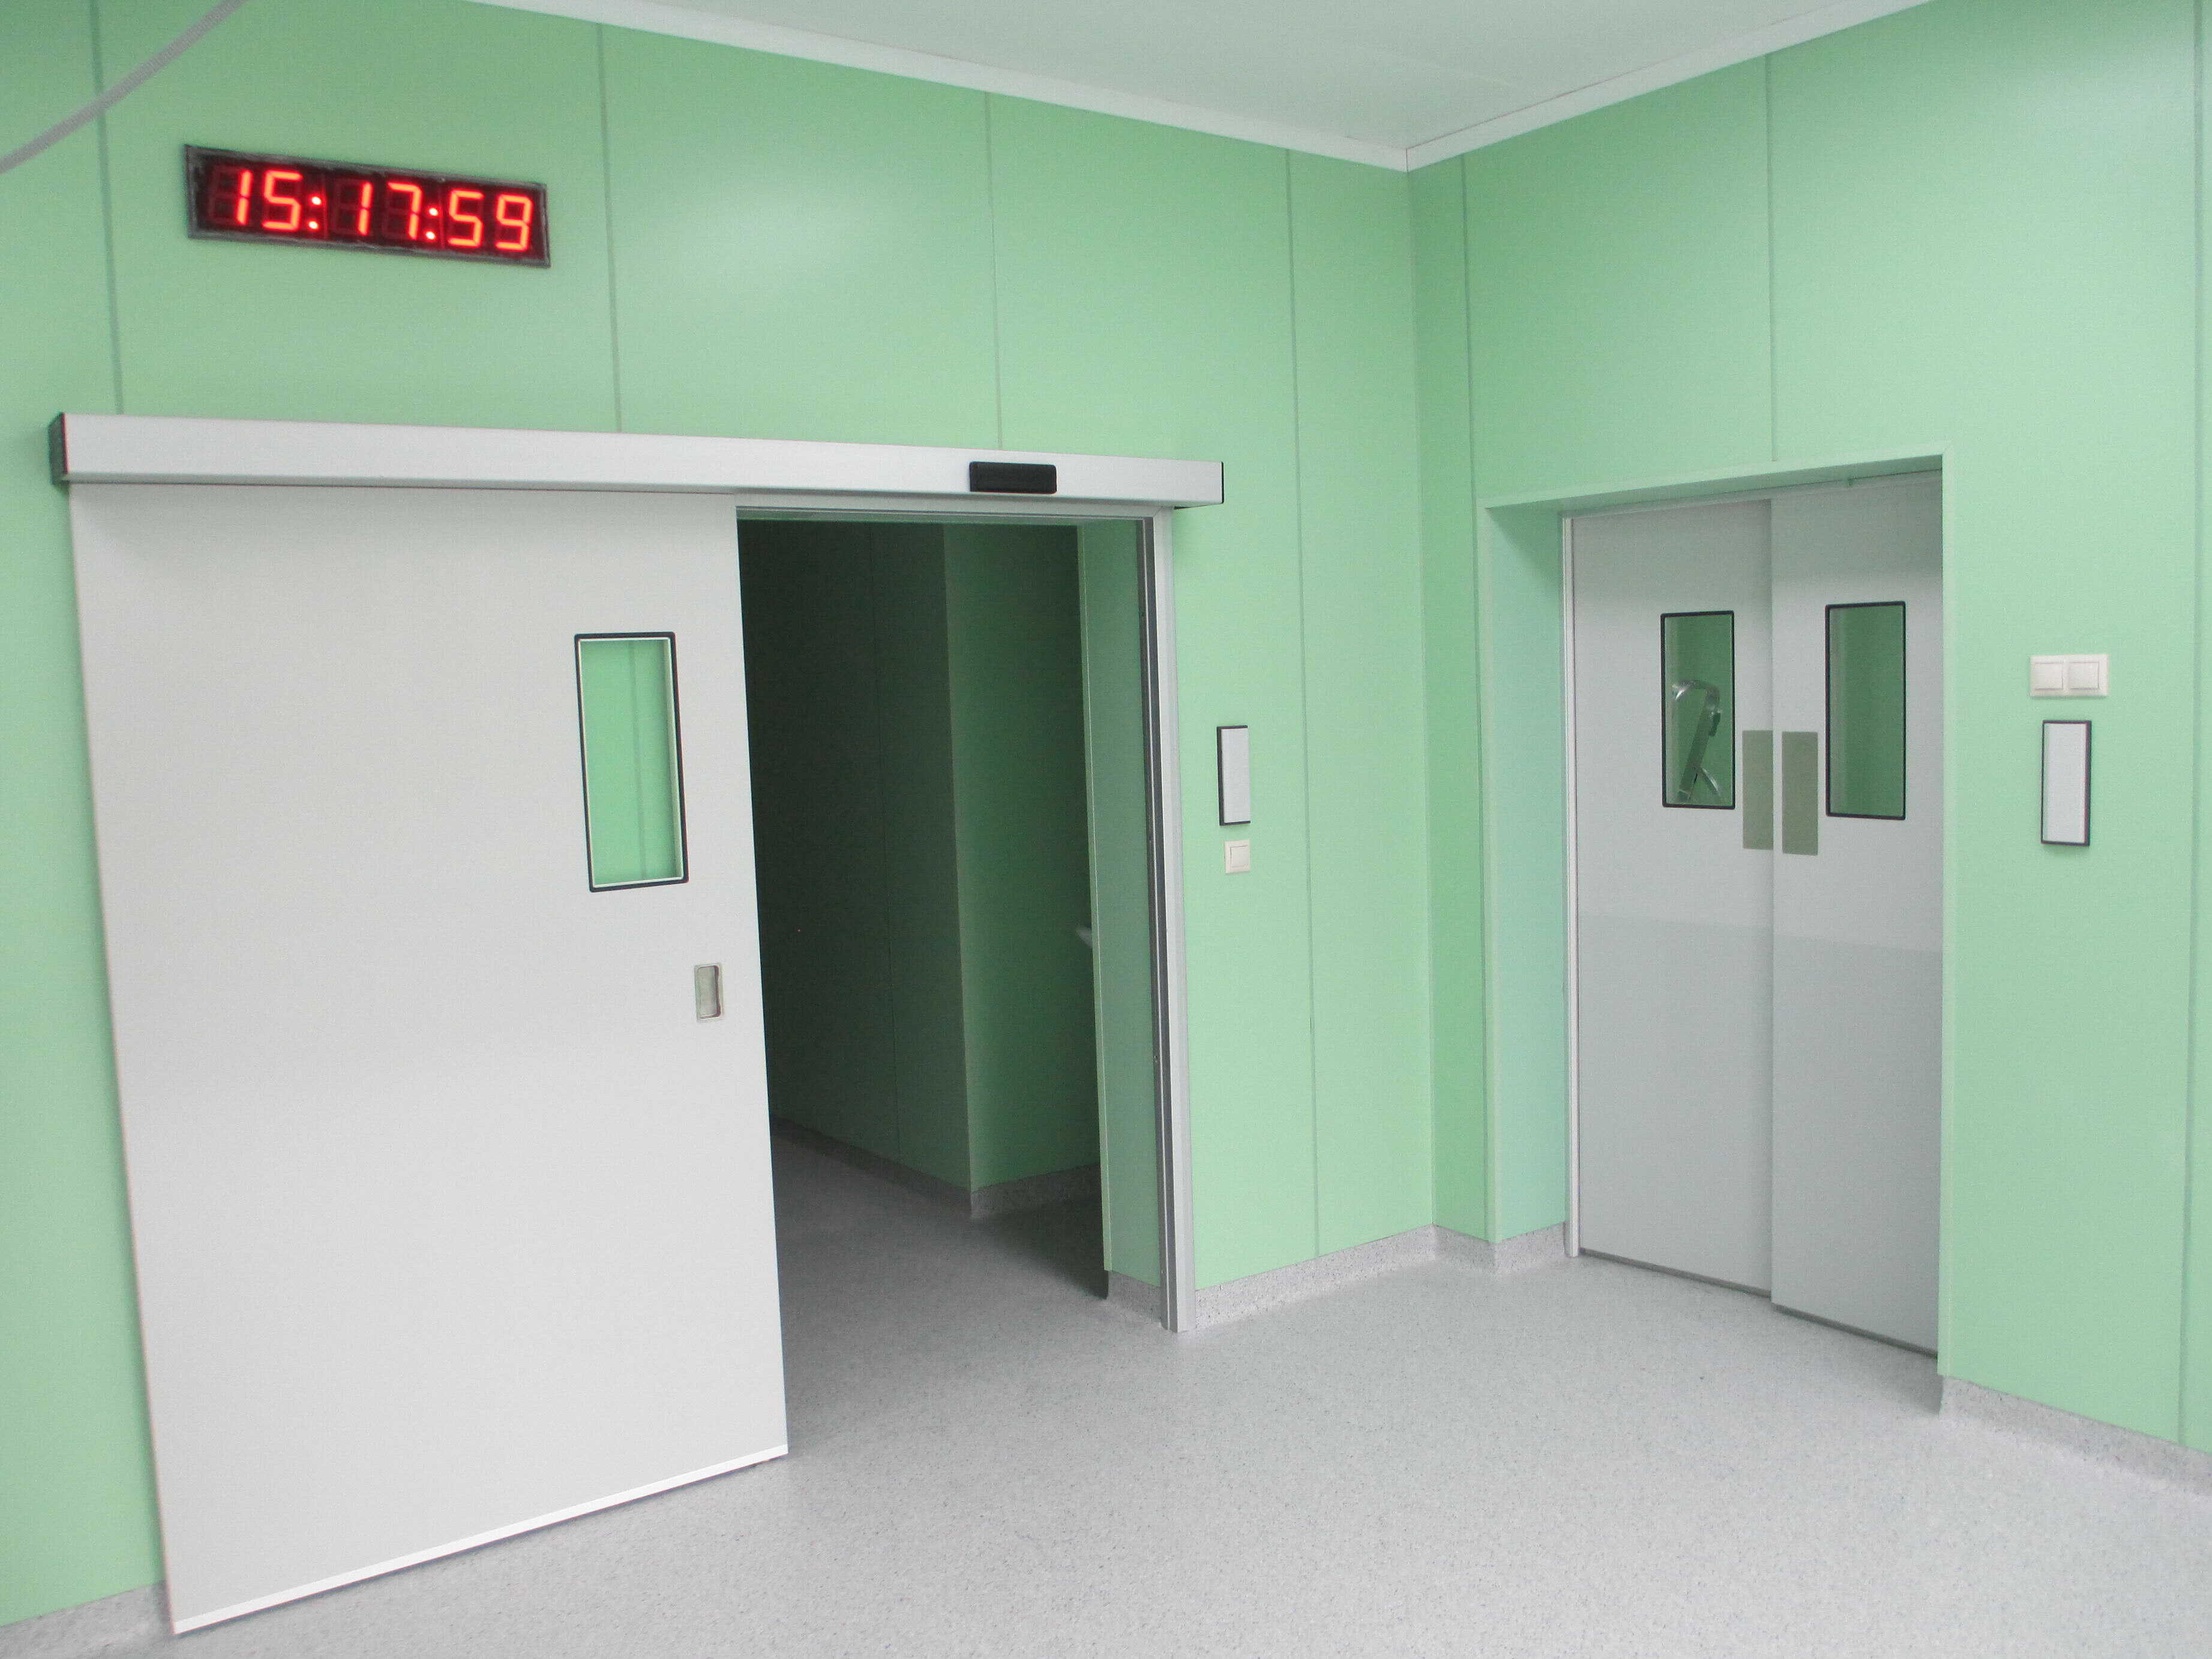 Двери медицинские екатеринбург. Слайдерные двери для чистых помещений. Автоматические двери для чистых помещений. Откатные медицинские двери. Медицинские двери для чистых помещений.